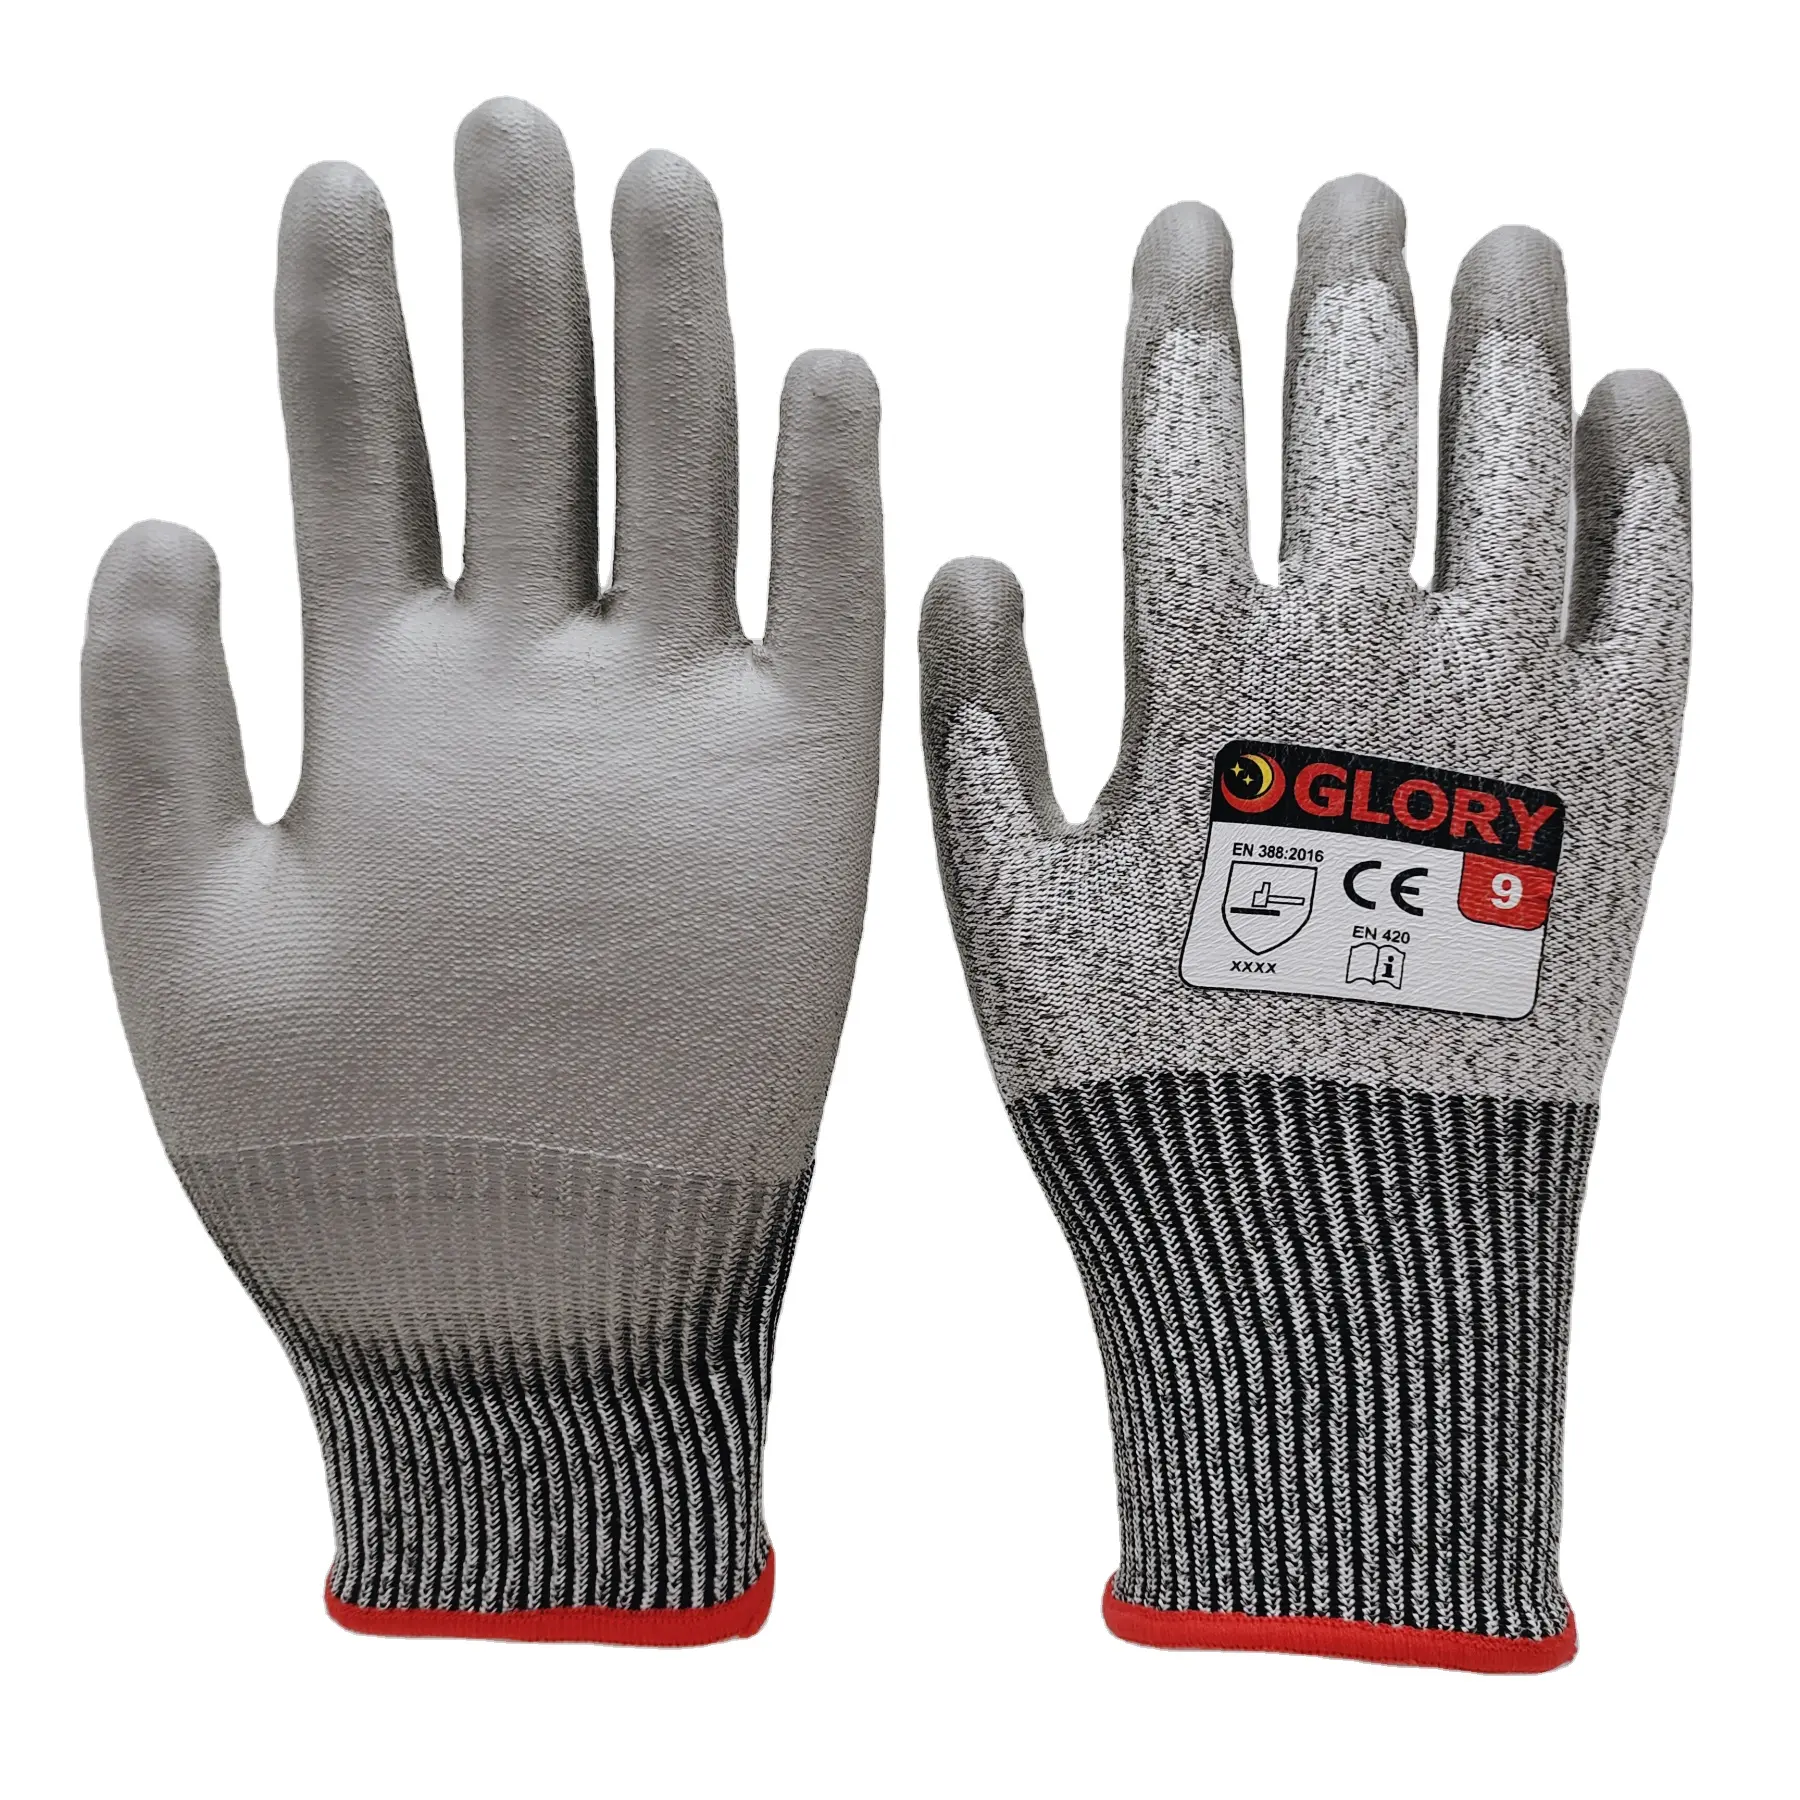 Anti-Schnitt-Handschuhe 13 Gauge HPPE und Glasfaser-Misch schale mit flexiblen Pu-Palm-Beschichtung shand schuhen zum Verkauf geschnitten c